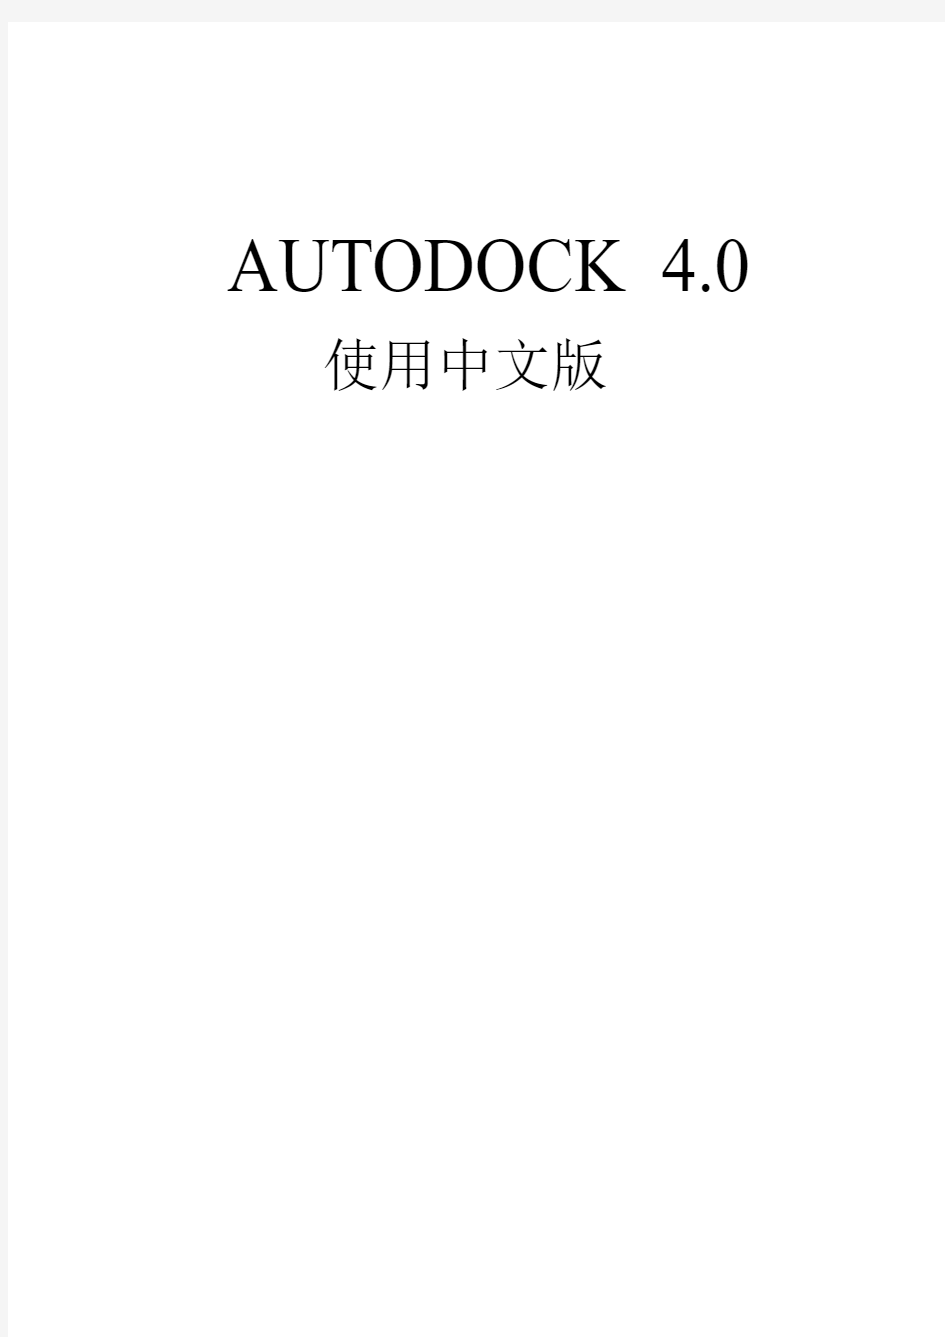 autodock中文版使用说明